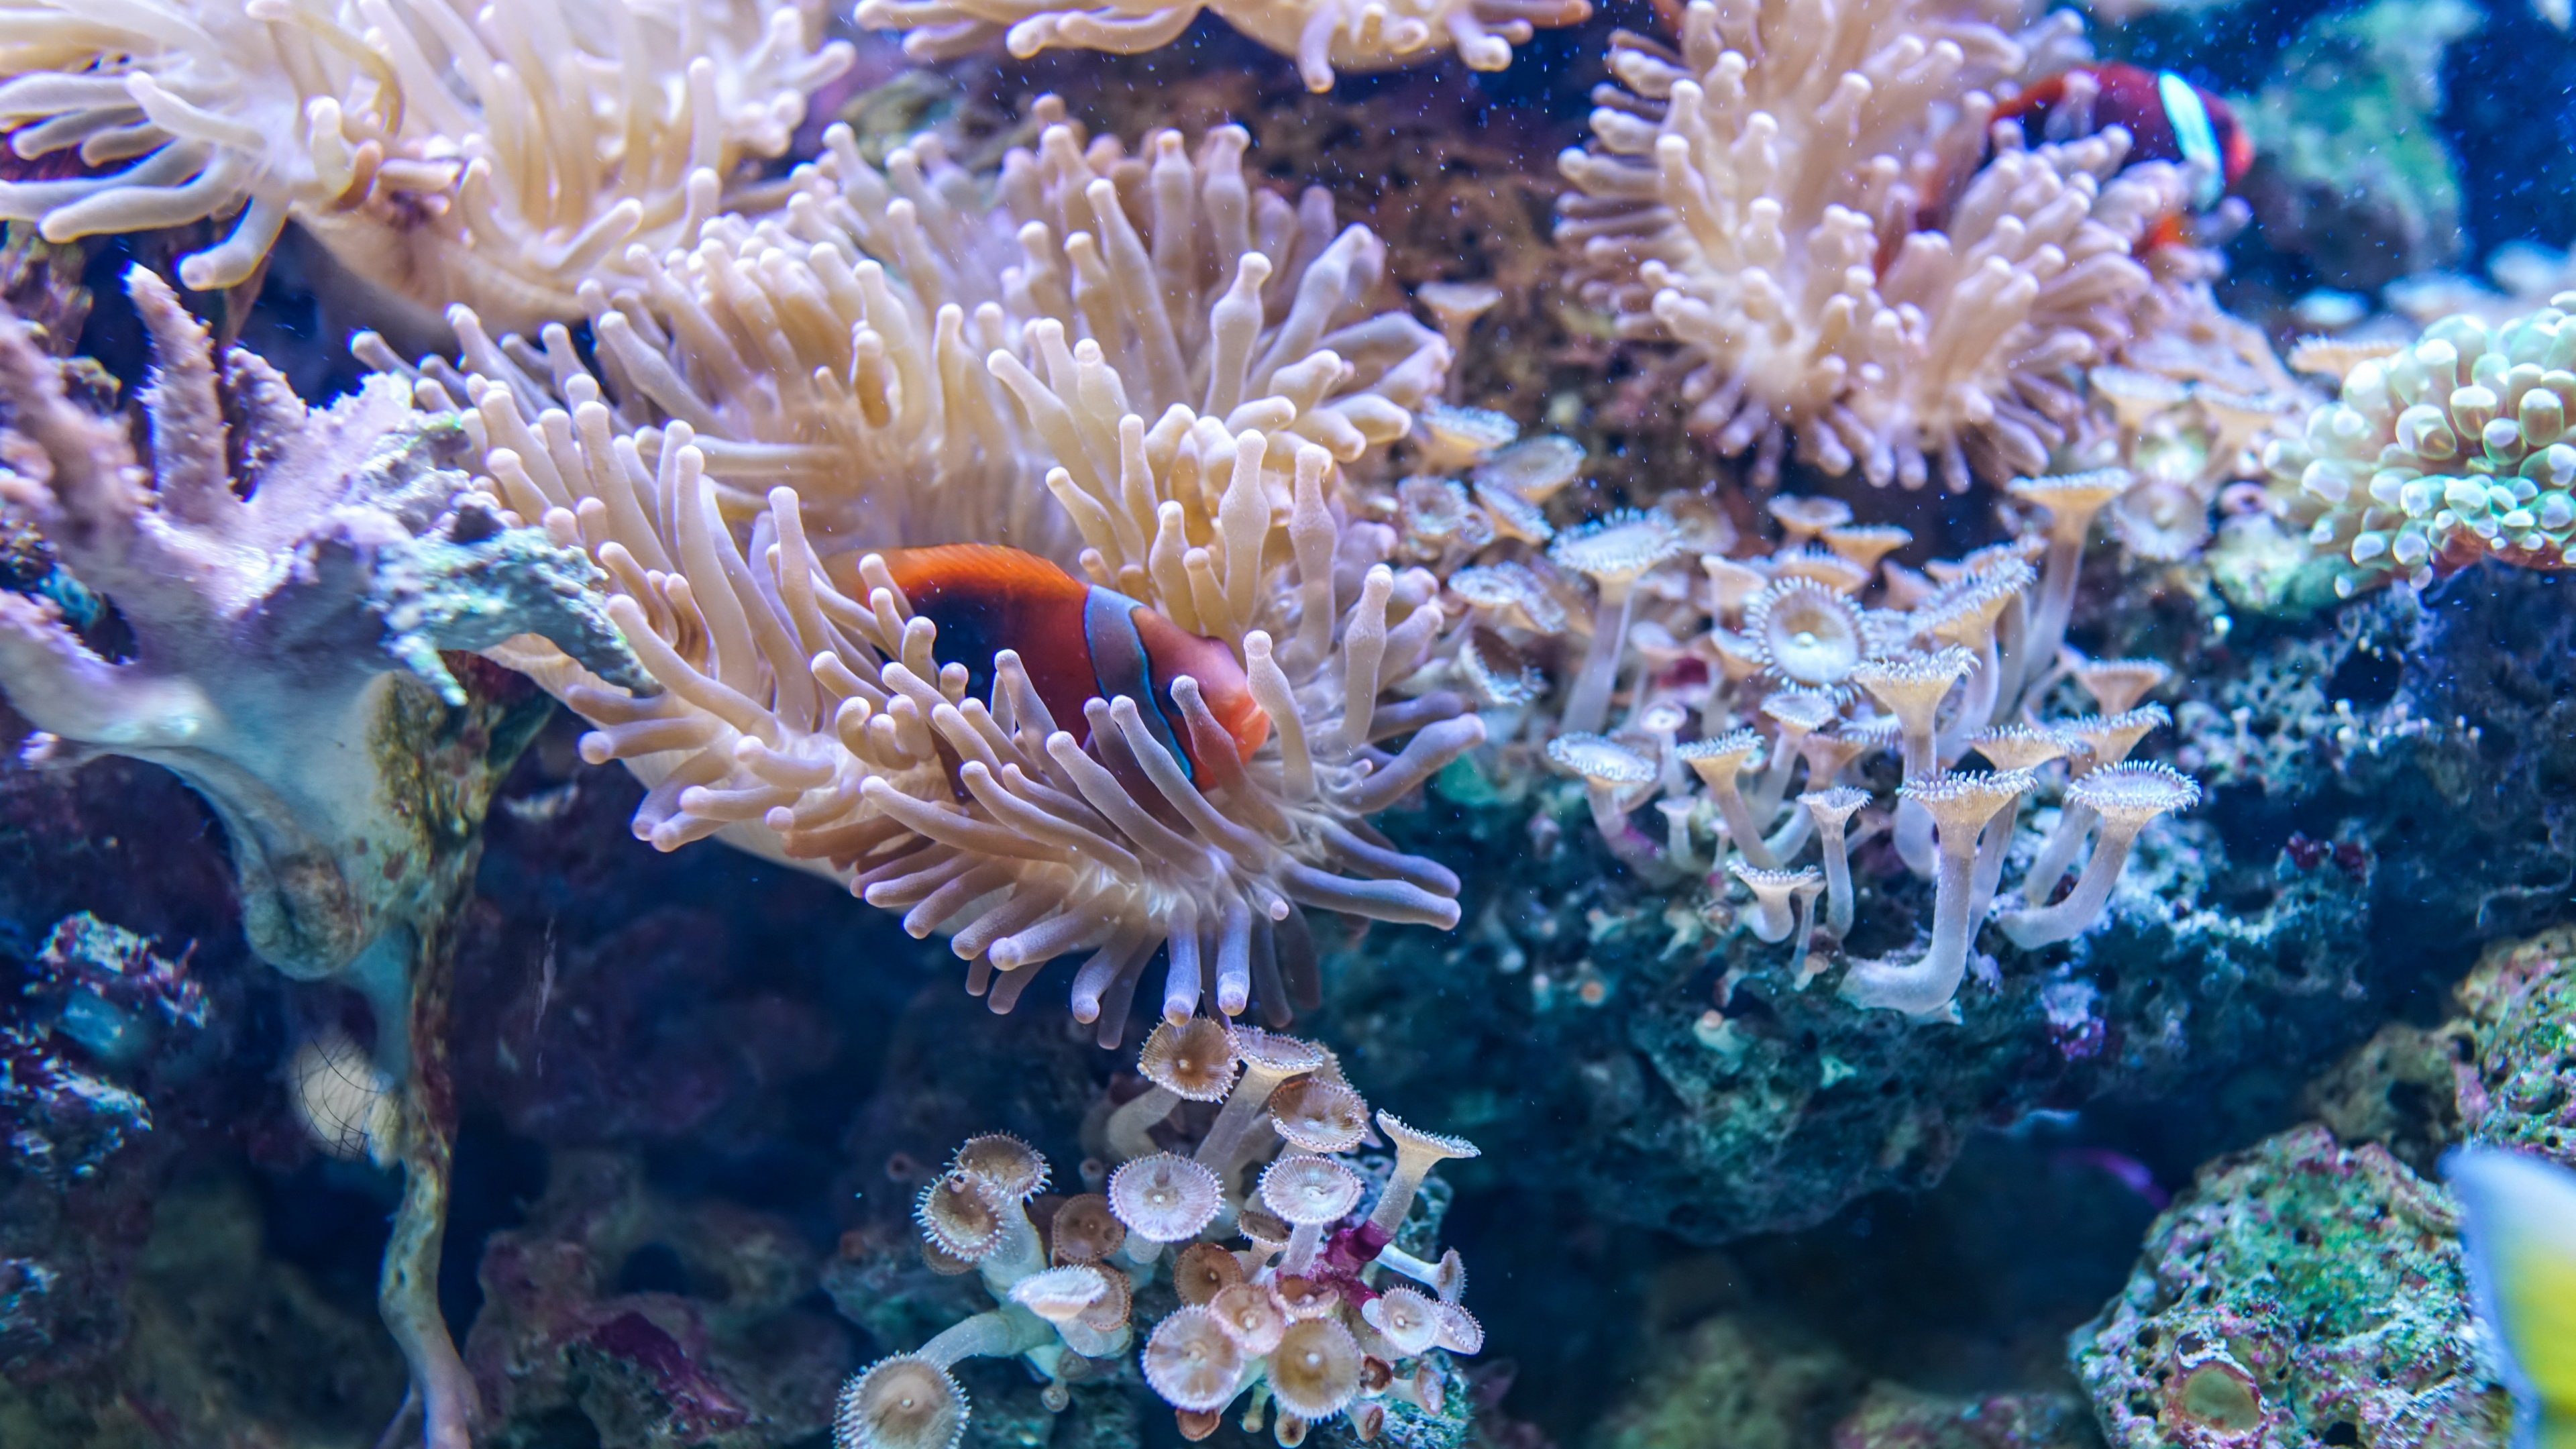 Coral underwater wallpaper, Aquatic life, 4K resolution, Underwater beauty, 3840x2160 4K Desktop